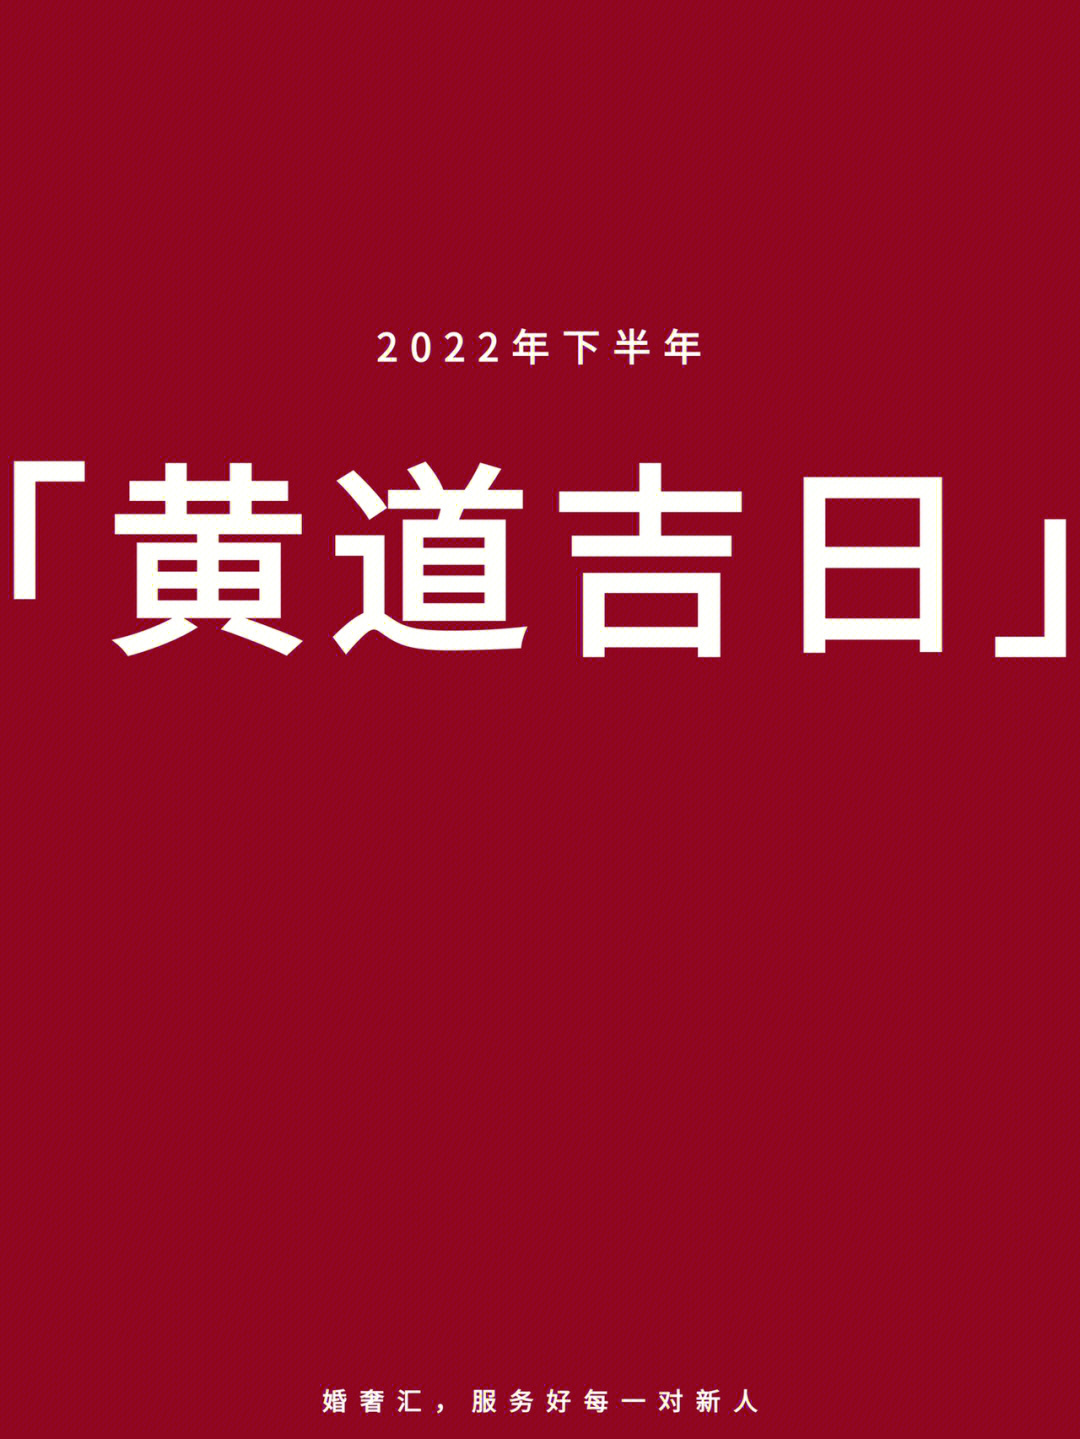 黄道吉日2022年3月图片